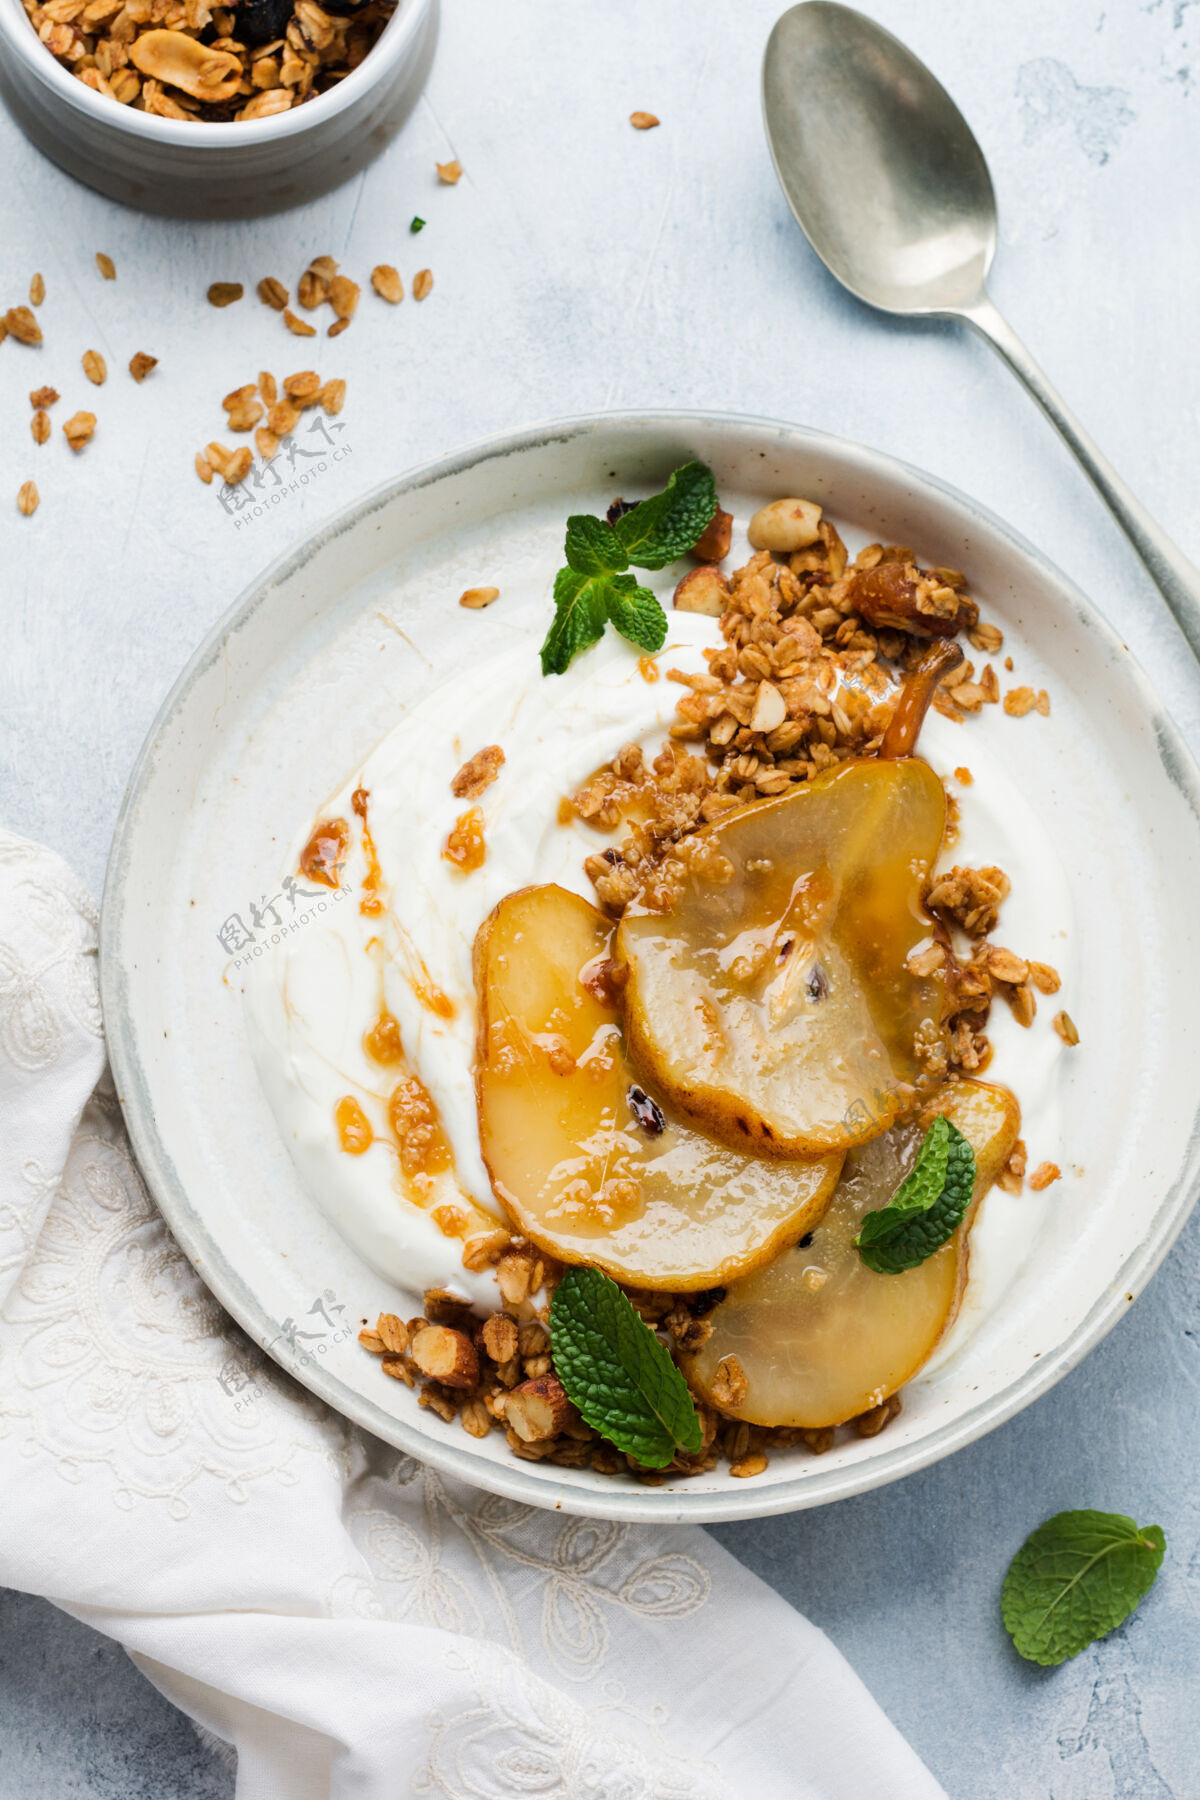 营养希腊酸奶与焦糖梨 格兰诺拉麦片 坚果和融化的糖作为一个健康的早餐灰色陶瓷盘子梨乳制品饮食